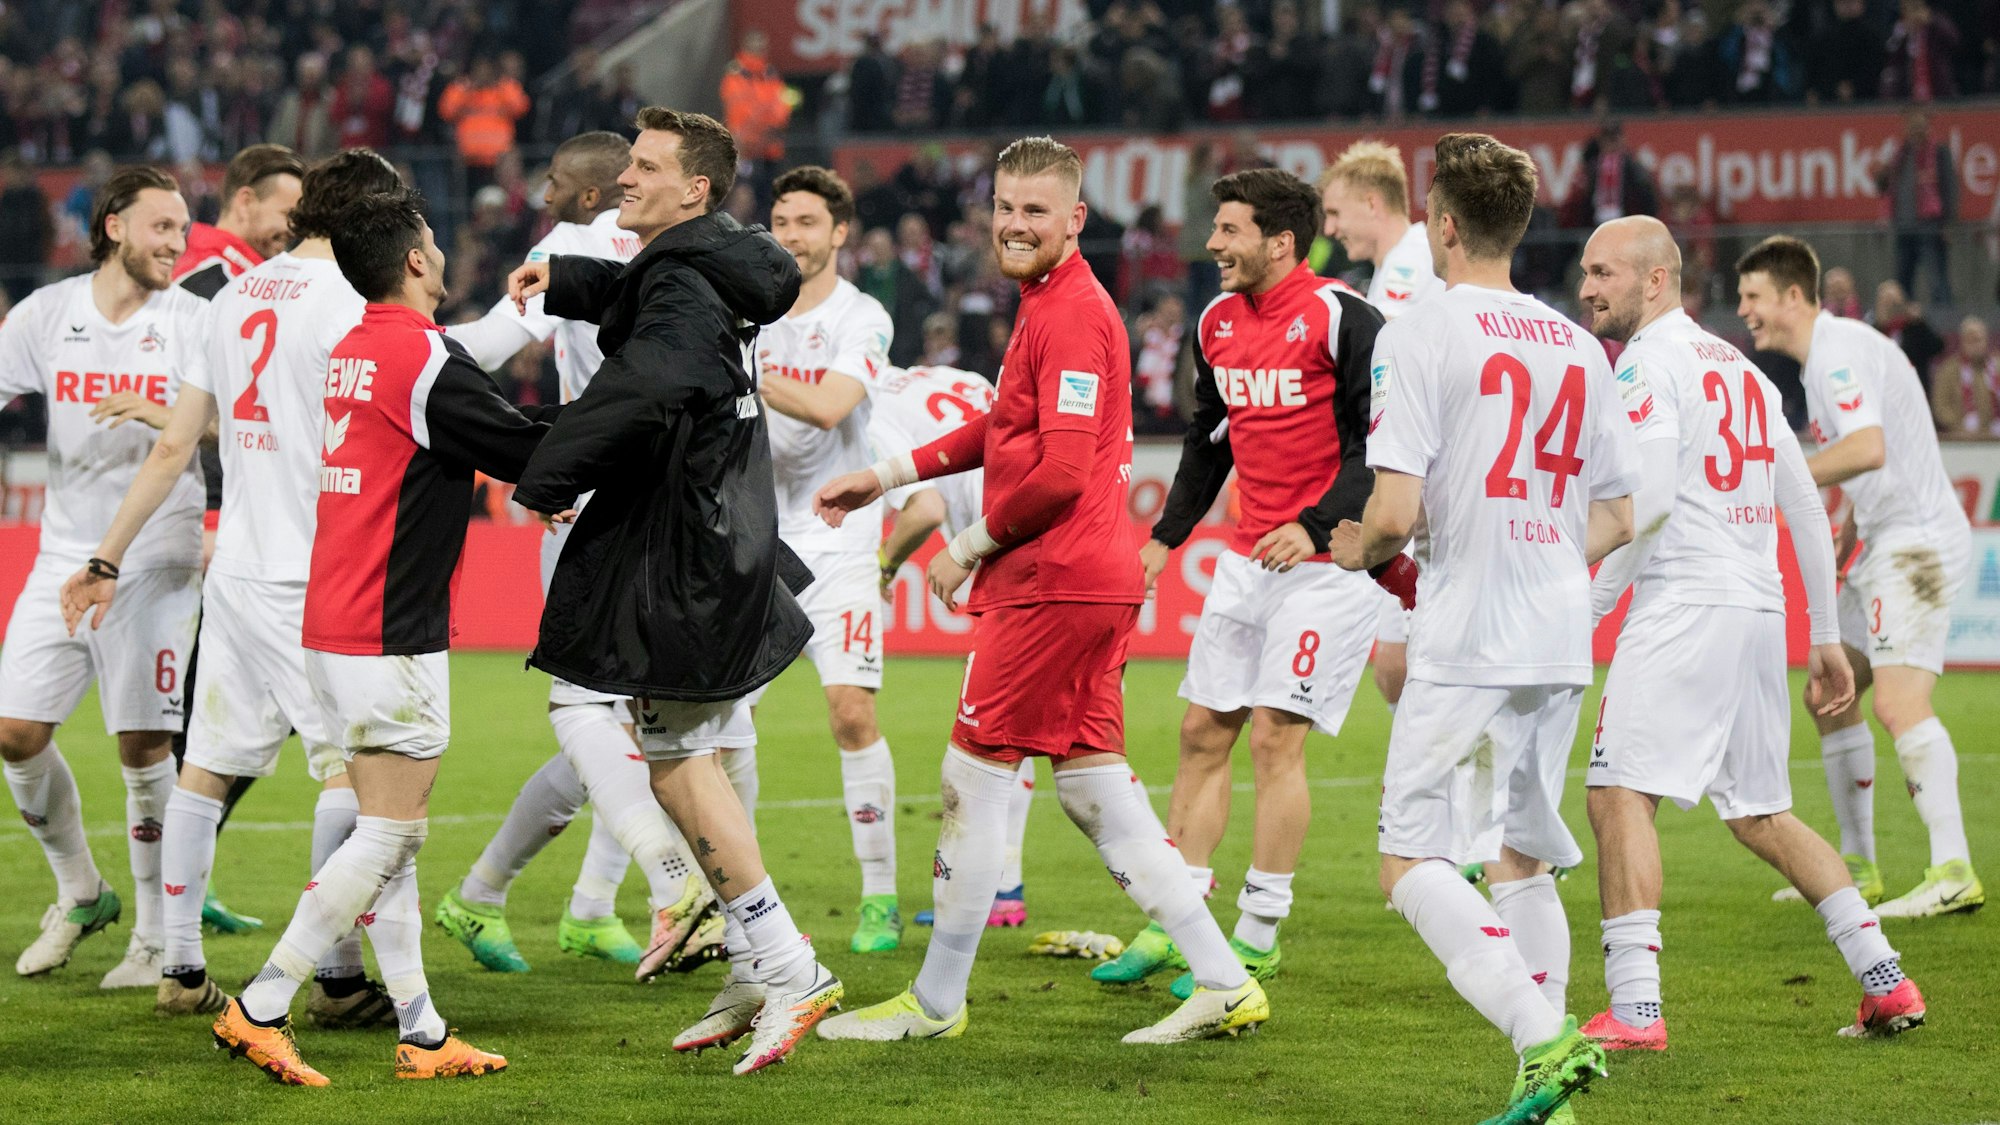 Die Mannschaft des 1. FC Köln jubelt nach einem gewonnen Spiel.